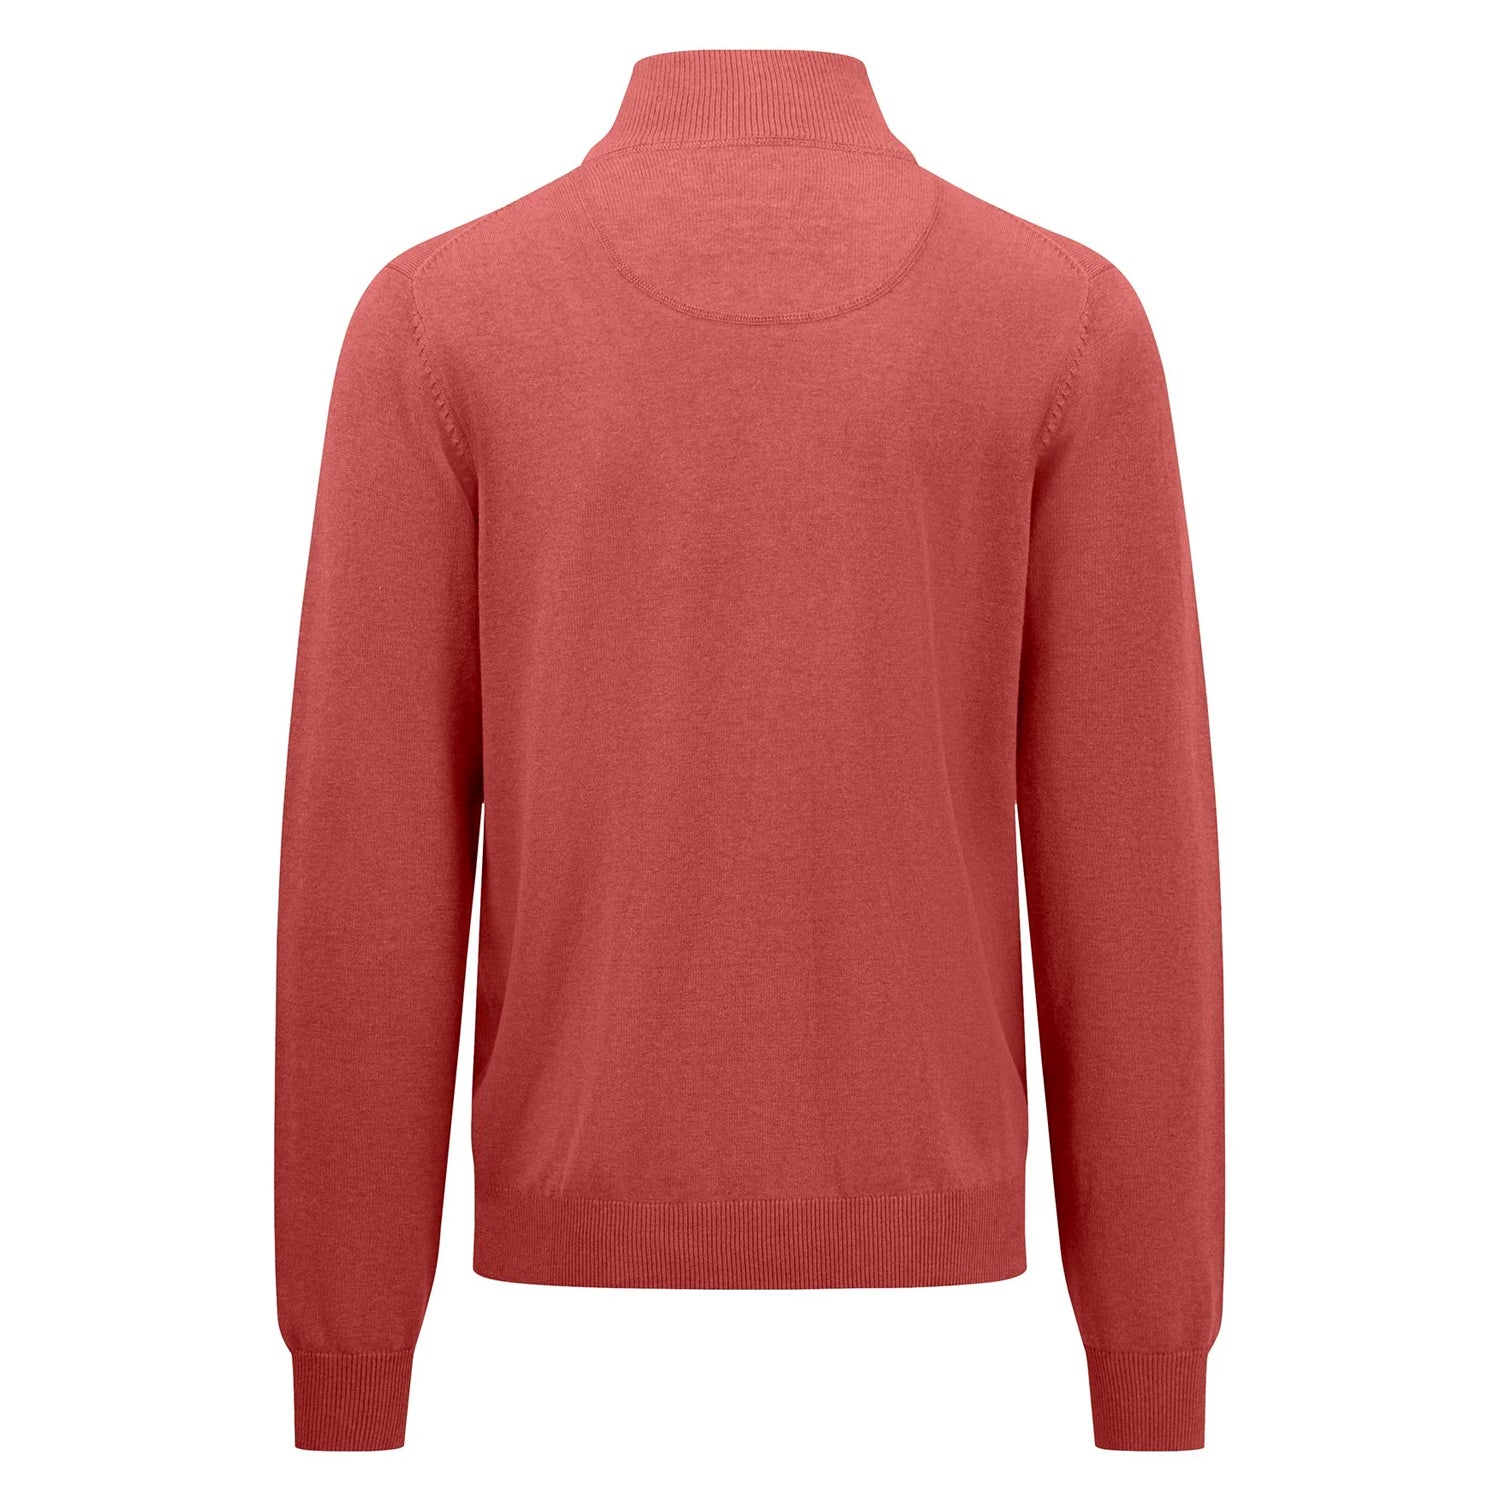 Fynch-Hatton Men's 1/4 Zip Troyer Sweater Orient Red